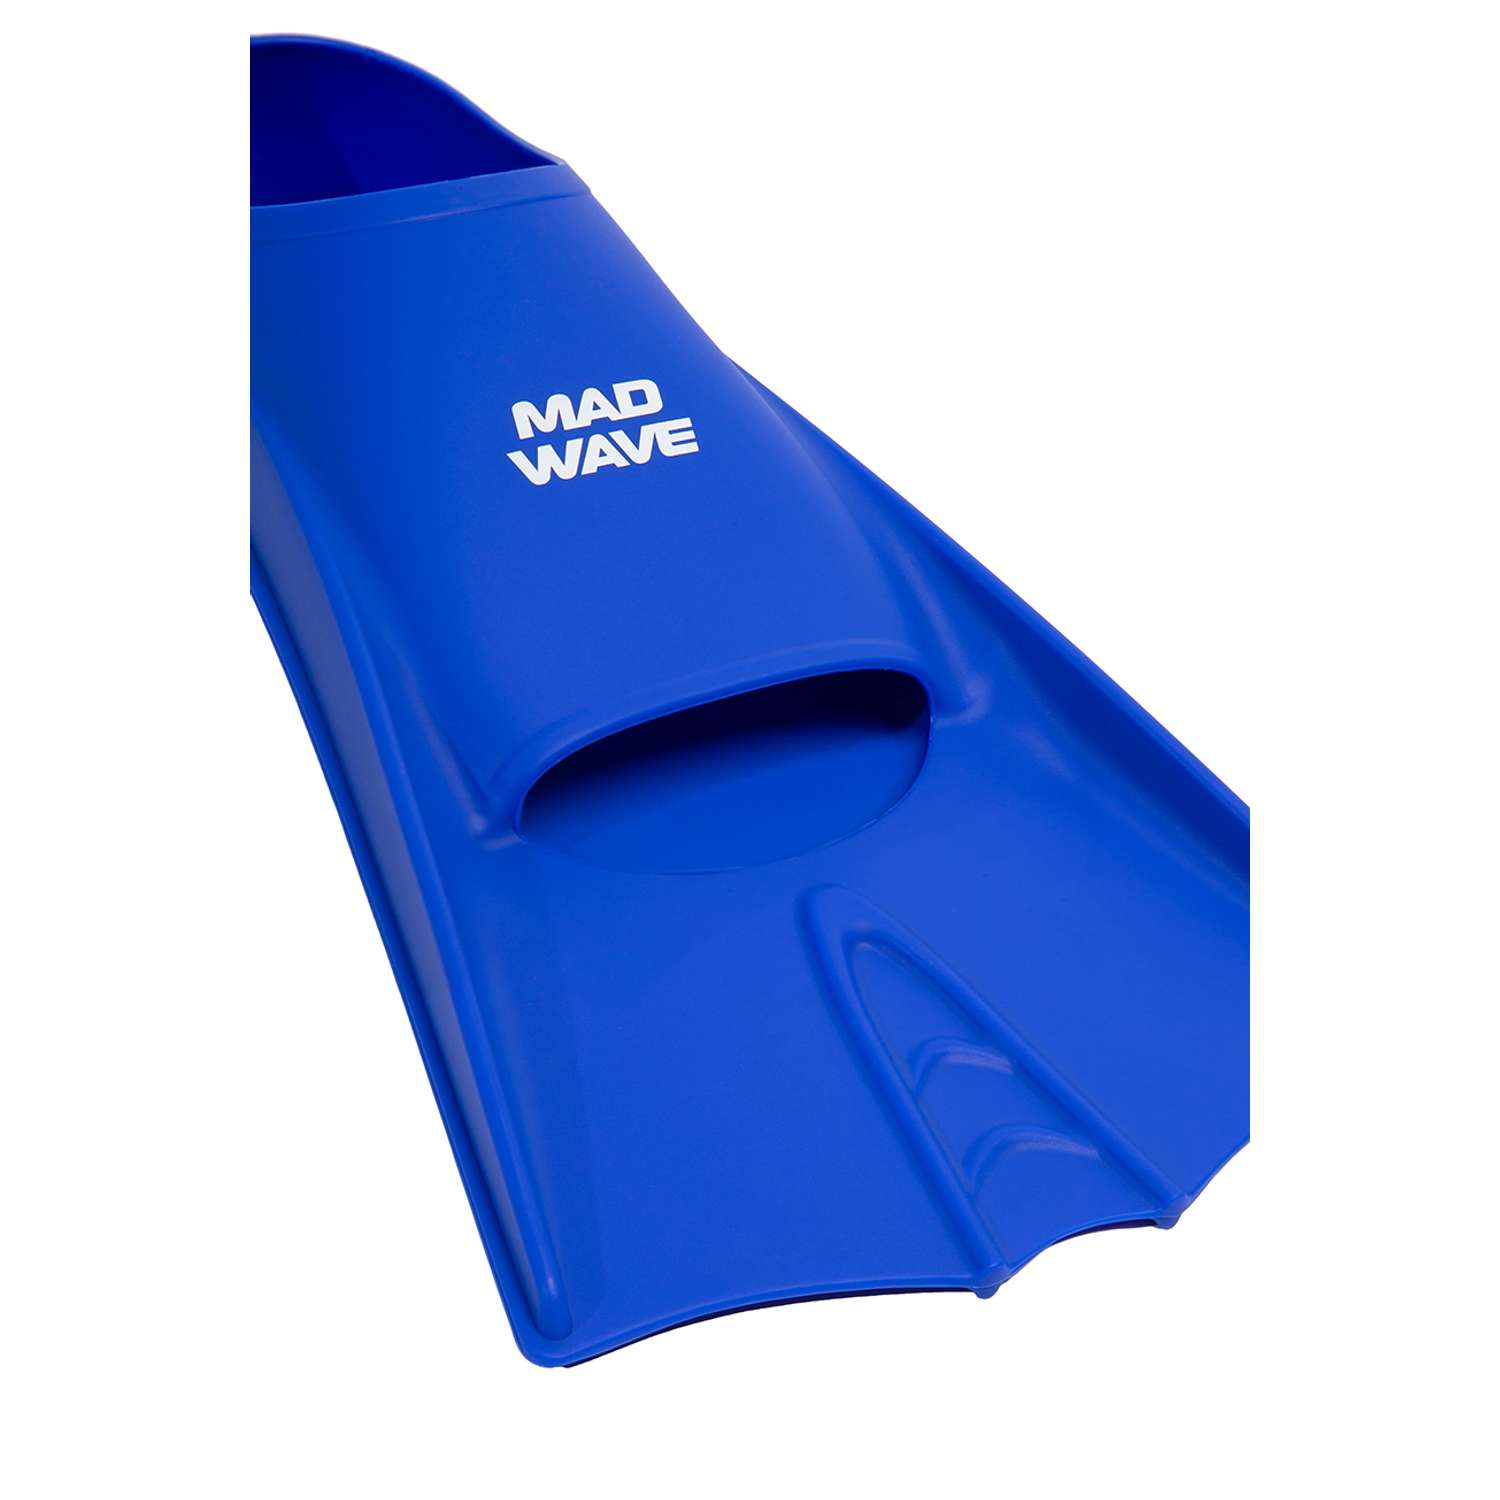 Ласты для плавания Mad Wave Flippers 2XS р.30-33 Blue - фото 5